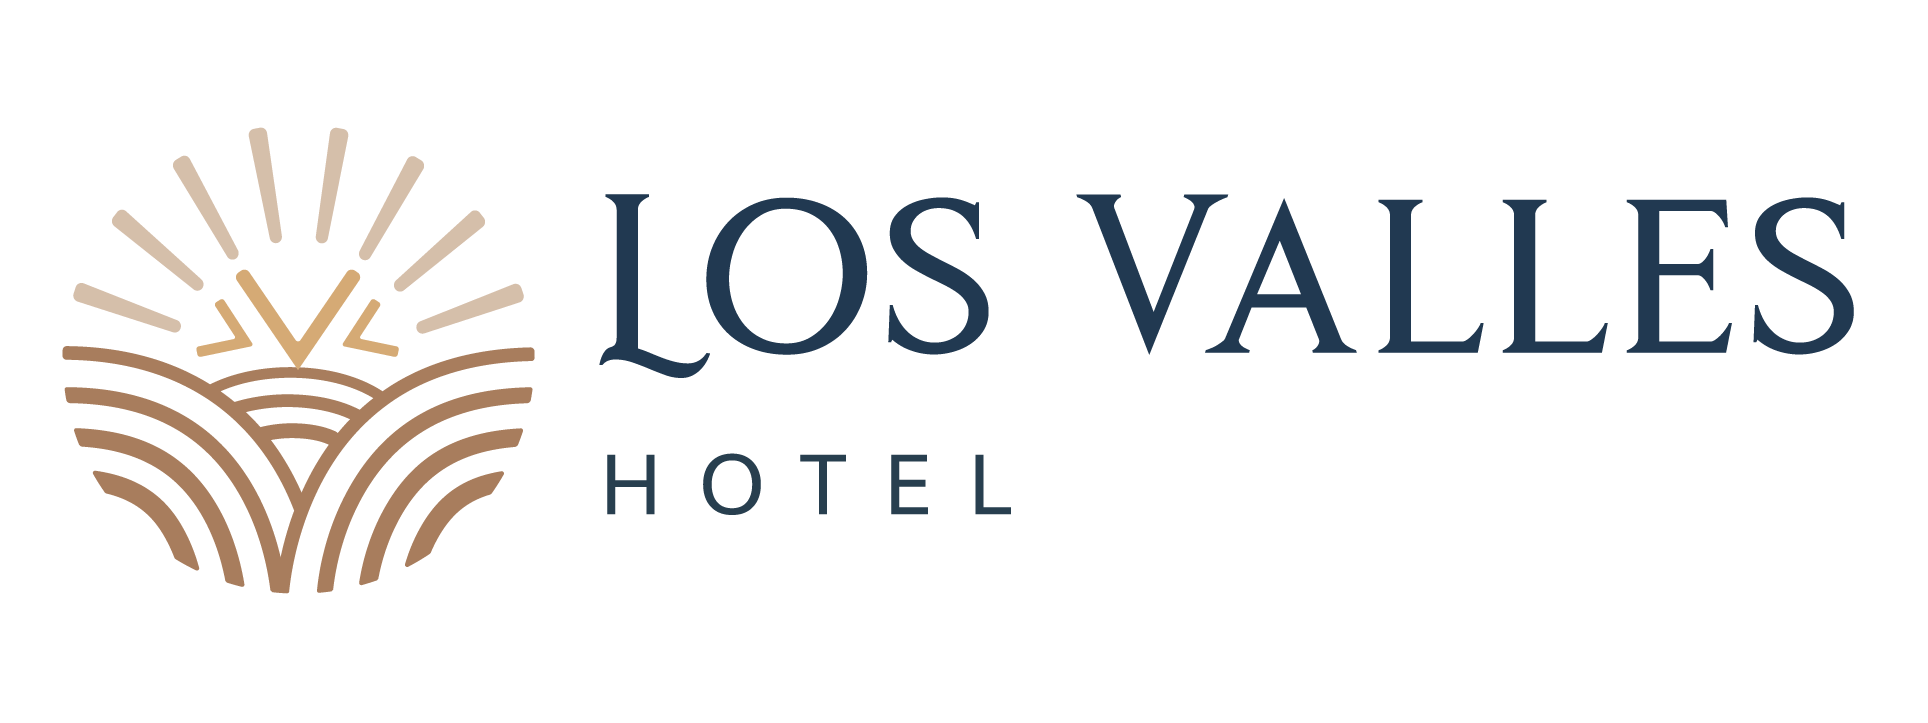 Los Valles Hotel